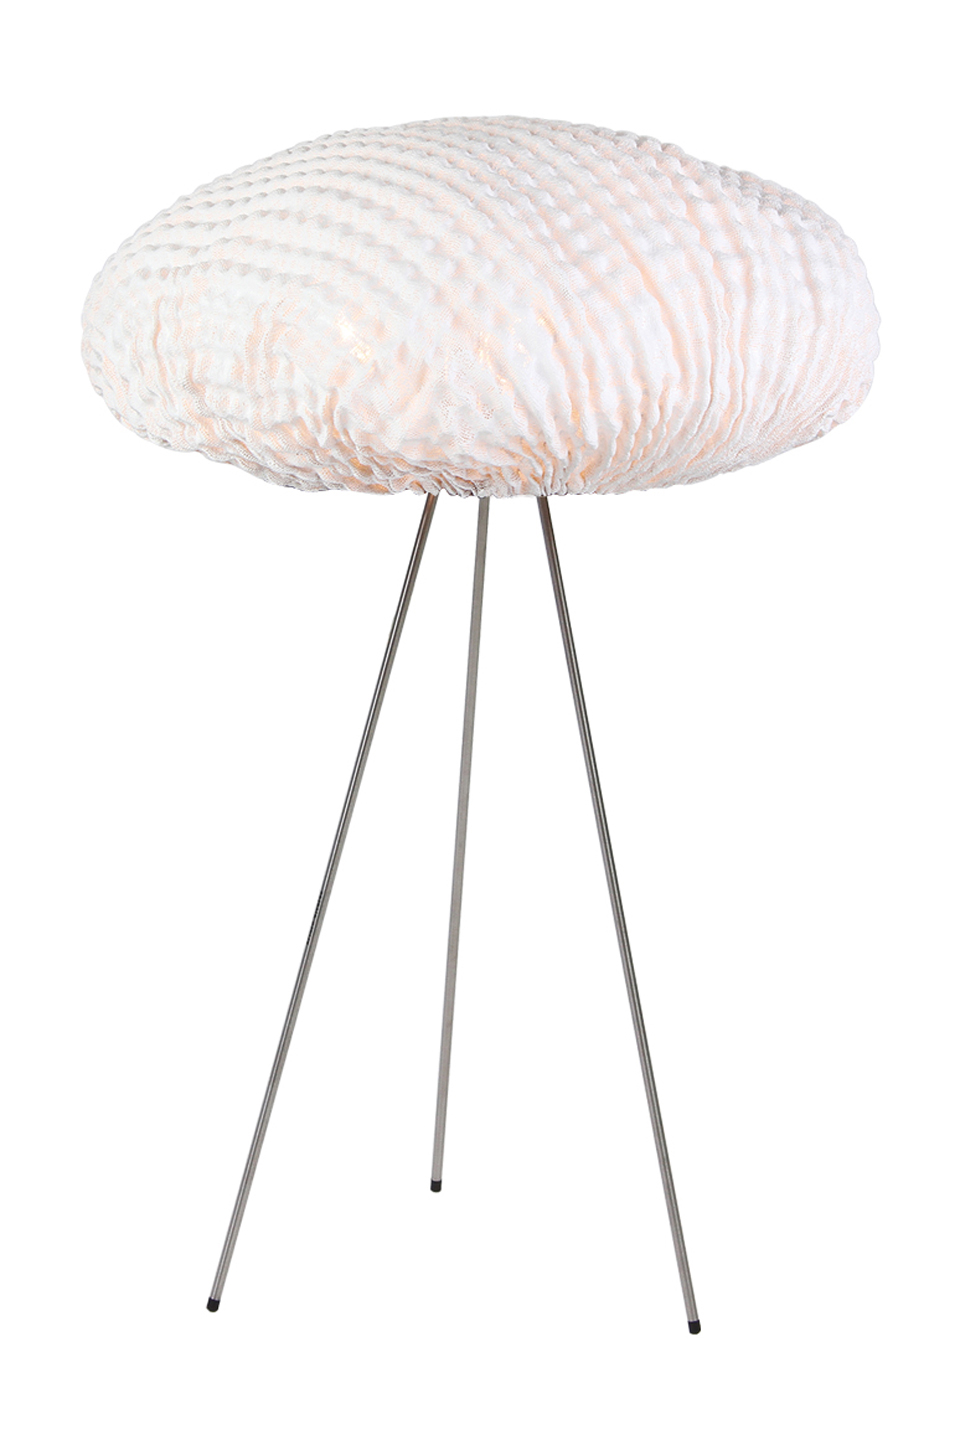 Tripod white lamp in fabric Simetech Tati. Arturo Alvarez. 